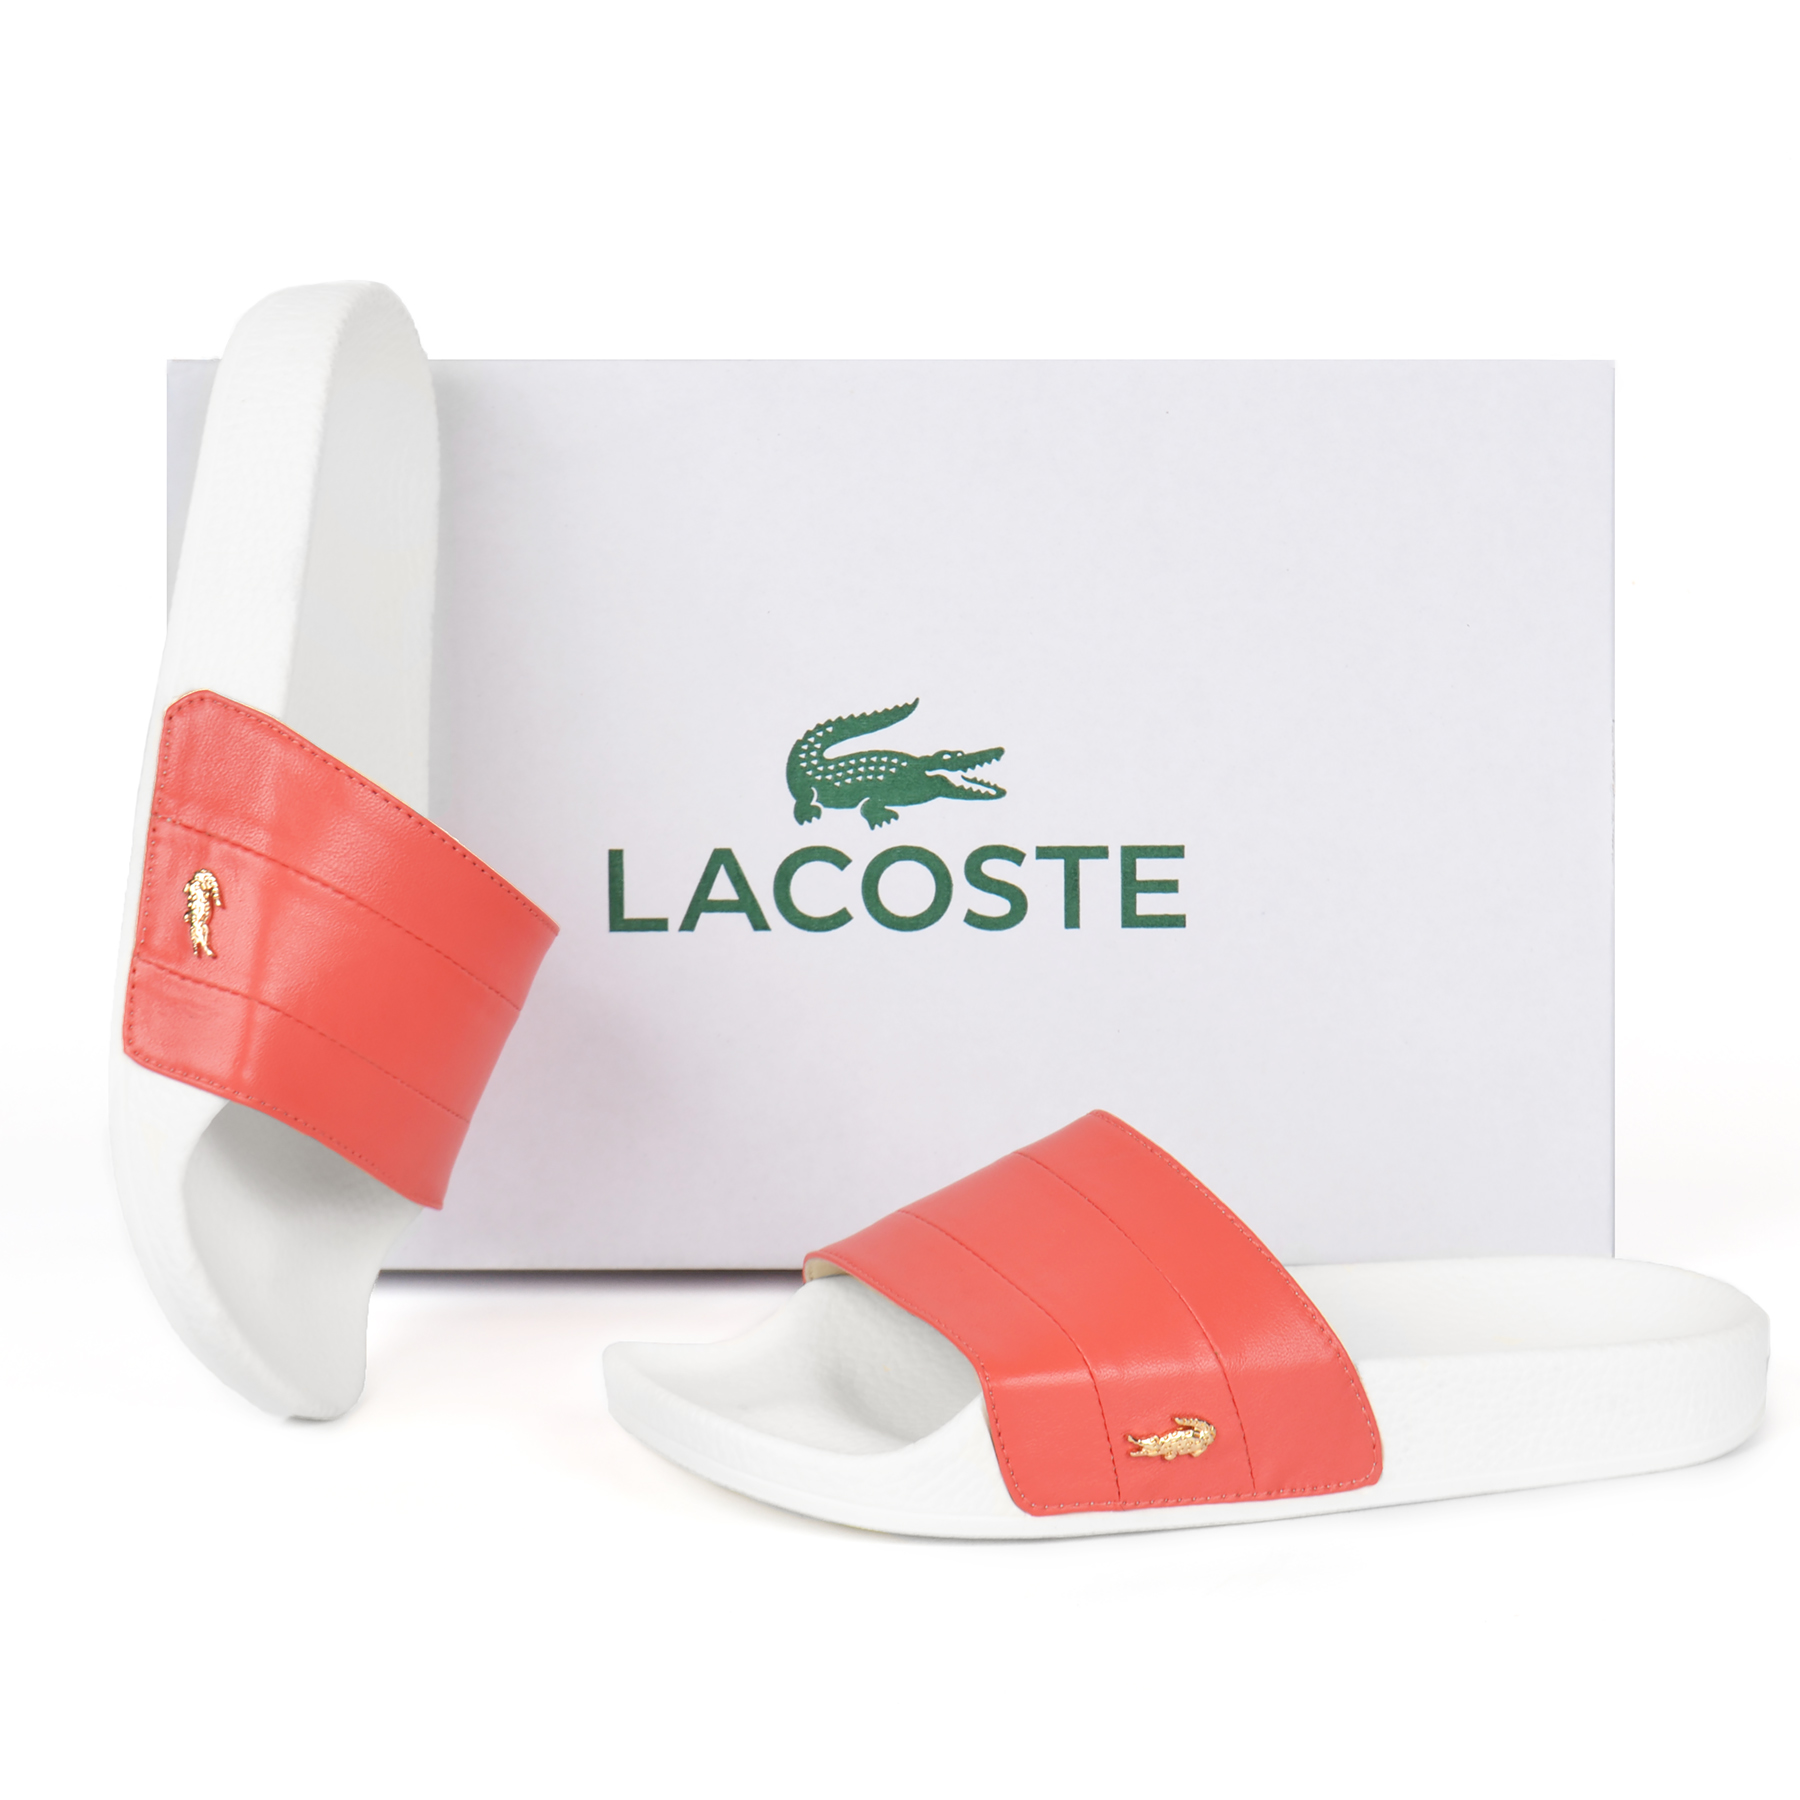 Шльопанці Lacoste жіночі з натуральної шкіри коралового кольору на білій підошві наймодніший хіт 2020 року купити в Україні інтернет-магазин взуття nanogu.com.ua